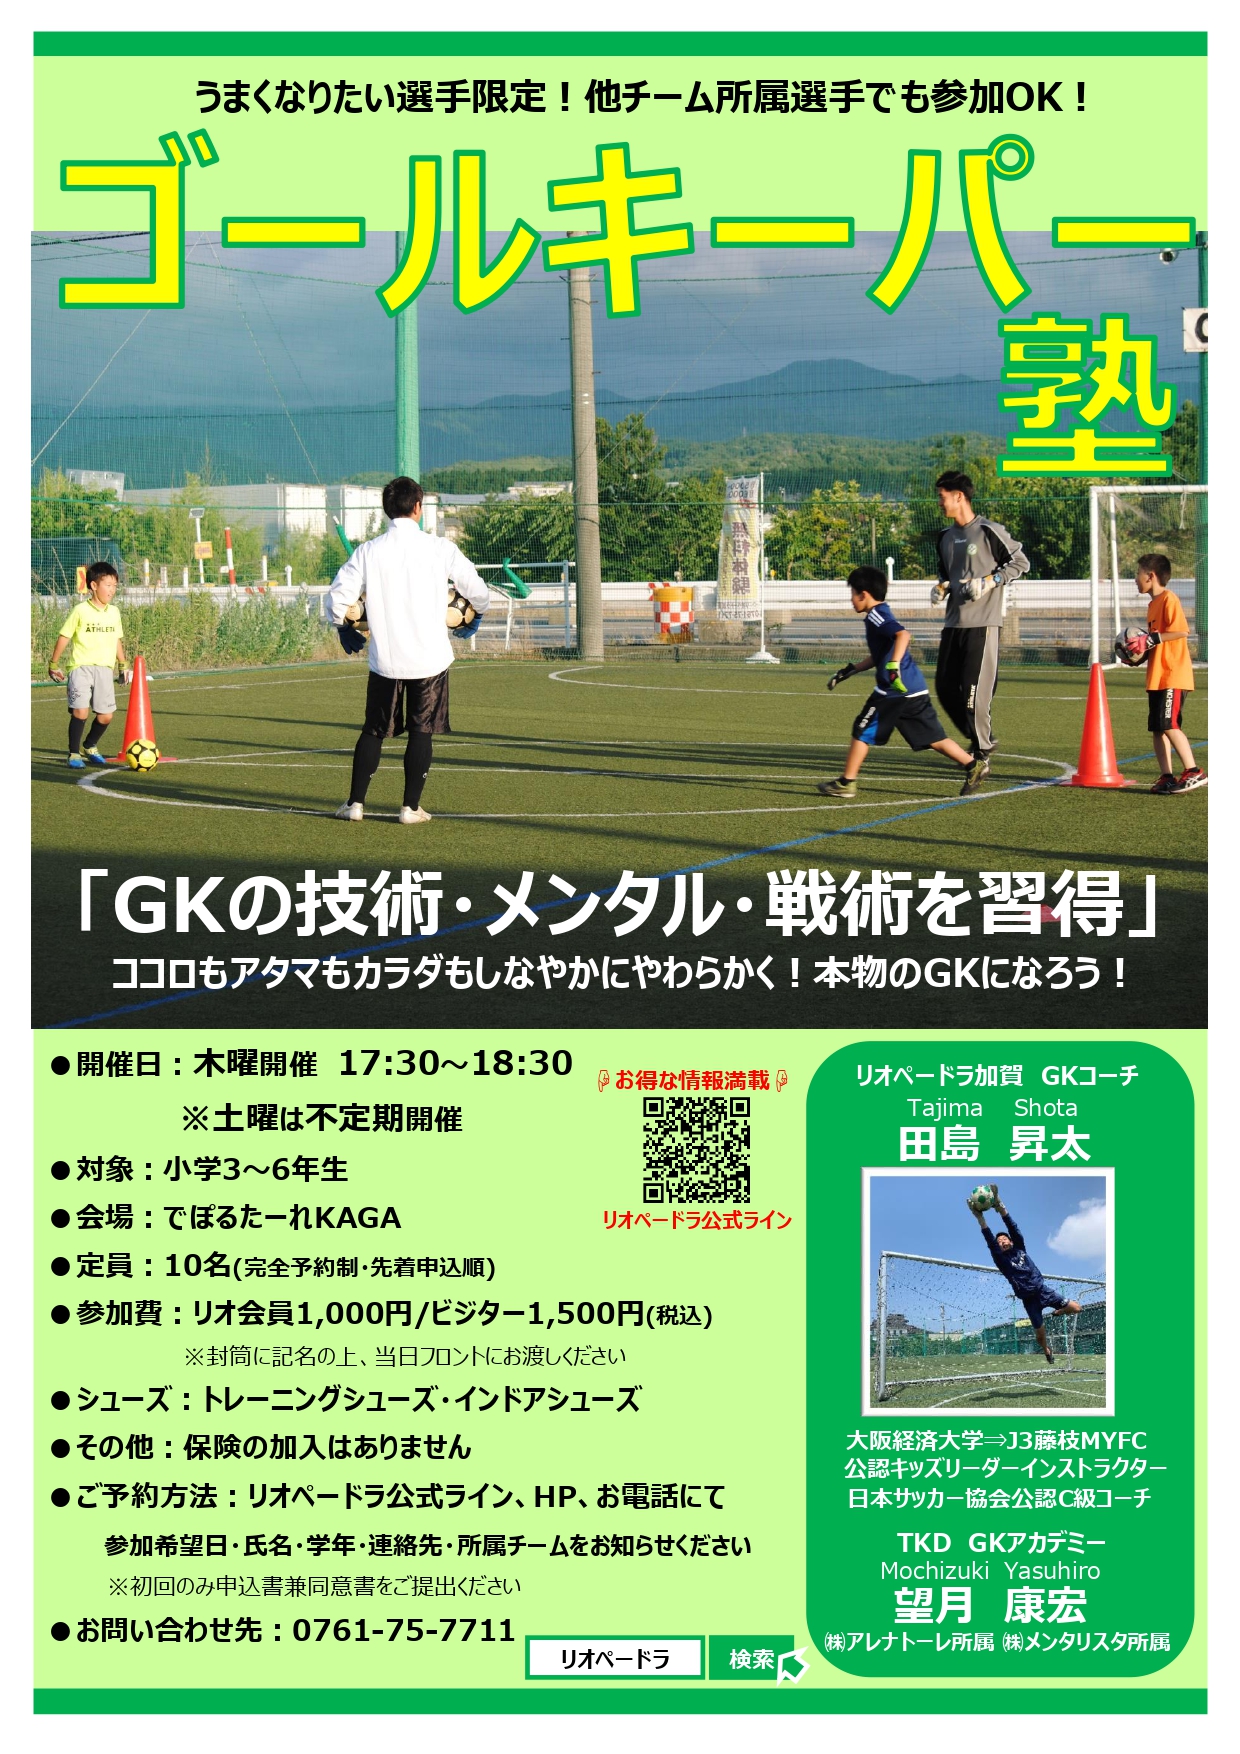 小学3 6年生対象 ゴールキーパー塾 11月の日程 石川県のサッカー 体育 体操 ならスポーツクラブリオペードラ加賀